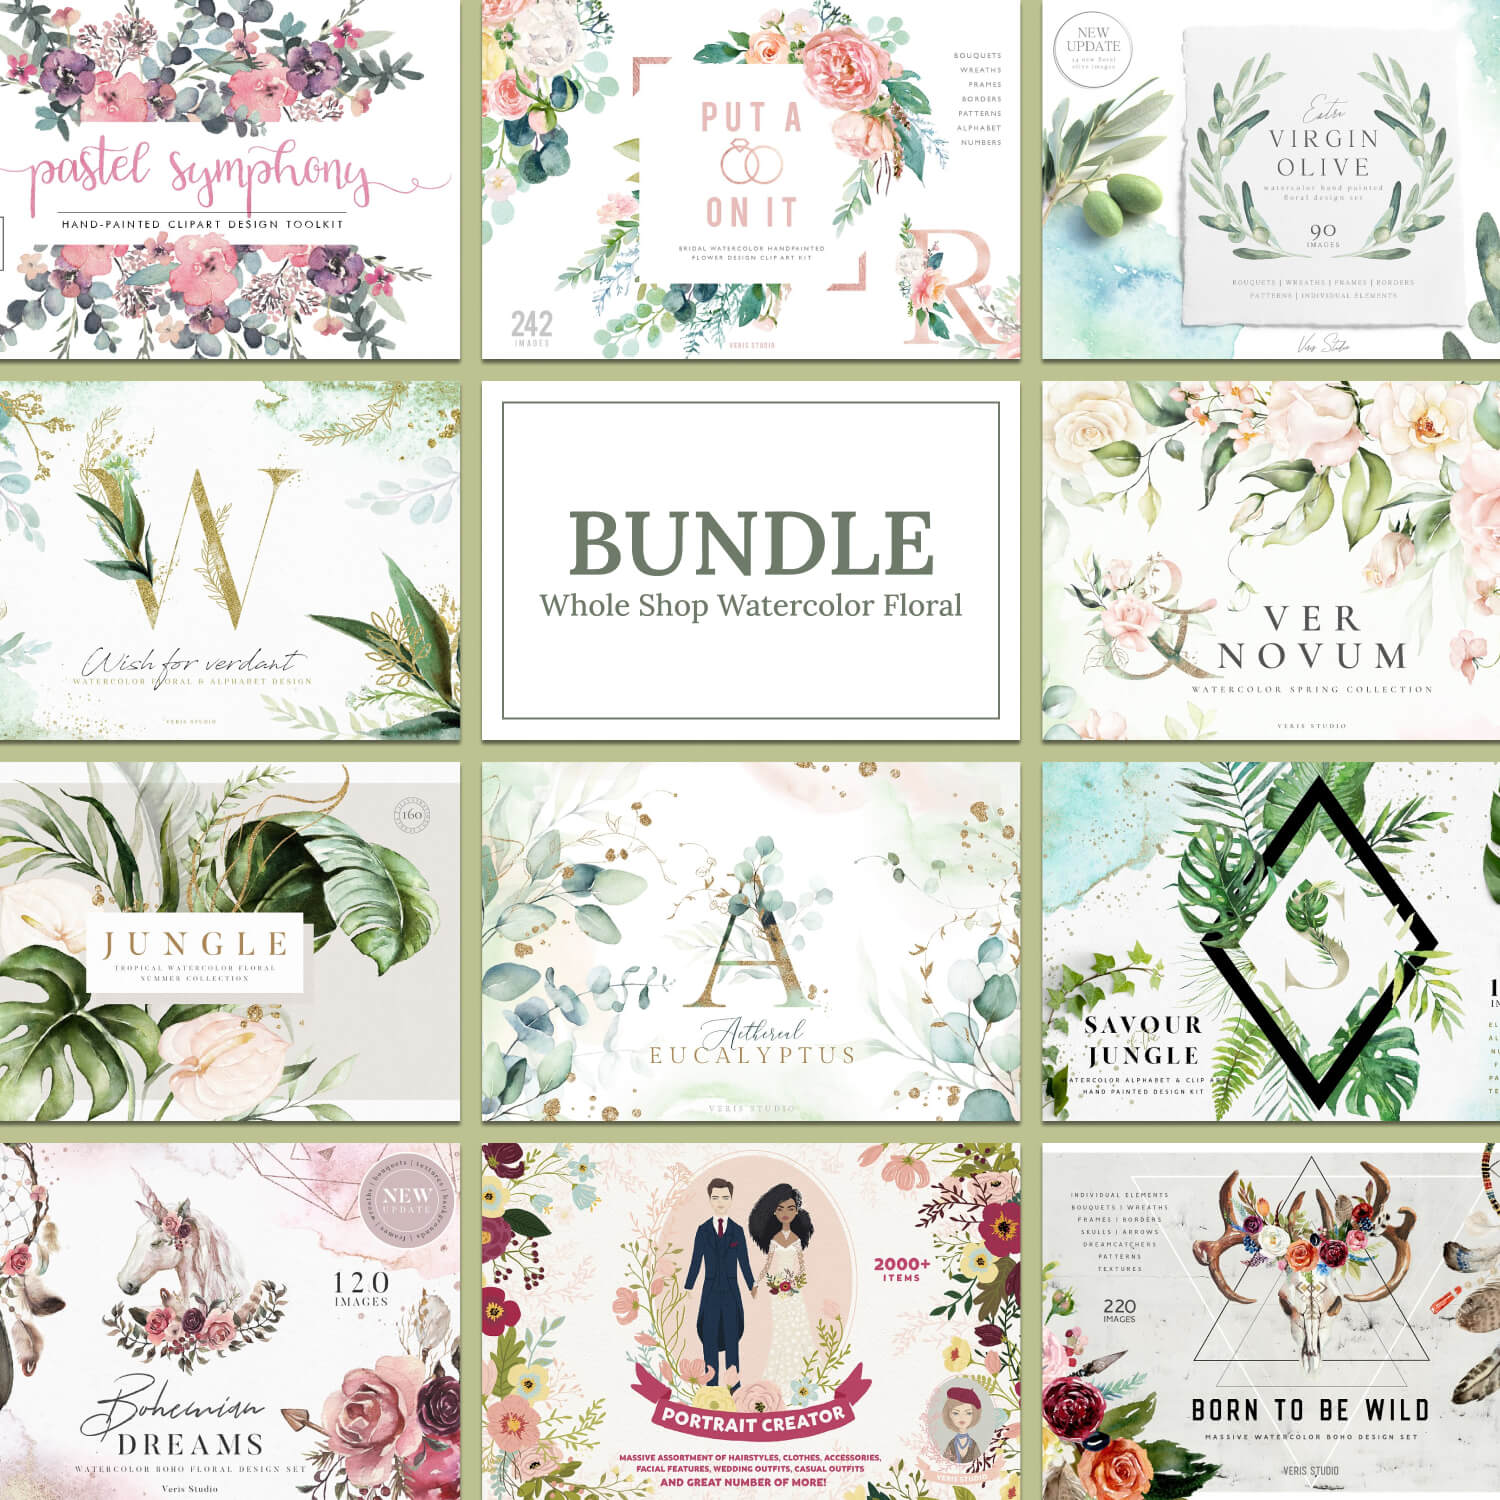 Slides of bundle whole shop watercolor floral.